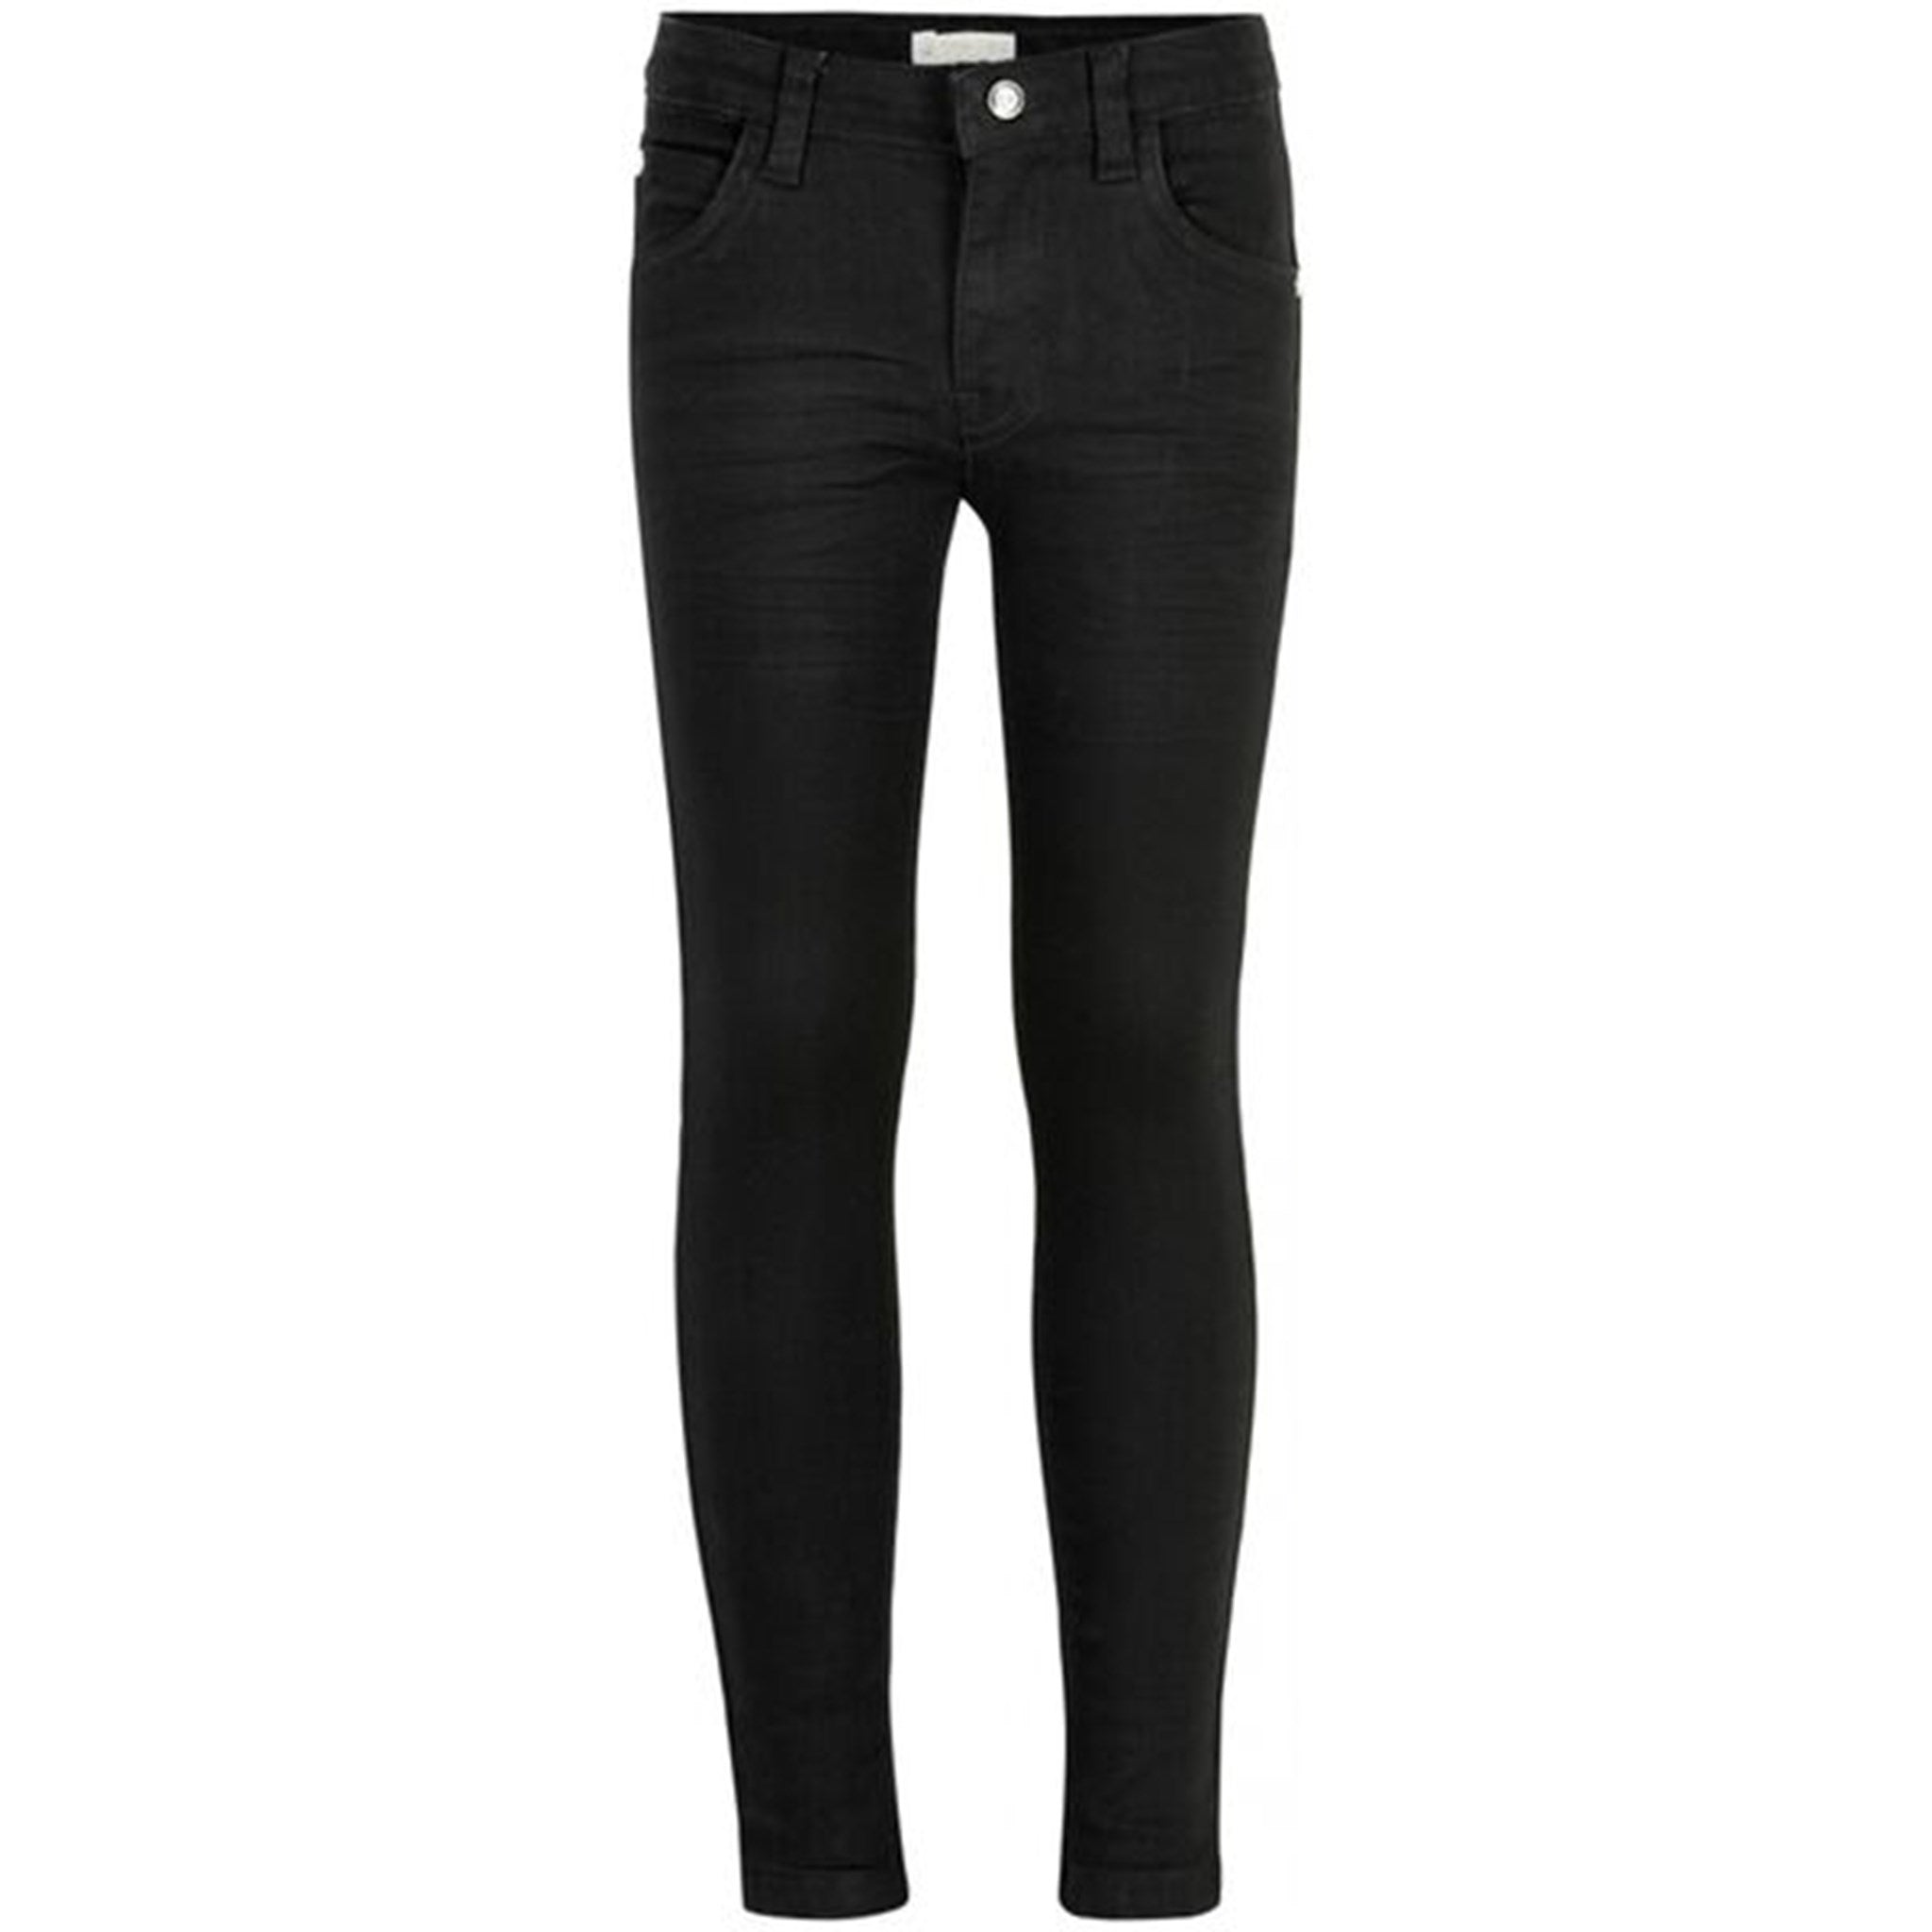 The New Oslo Super Slim Jeans Black